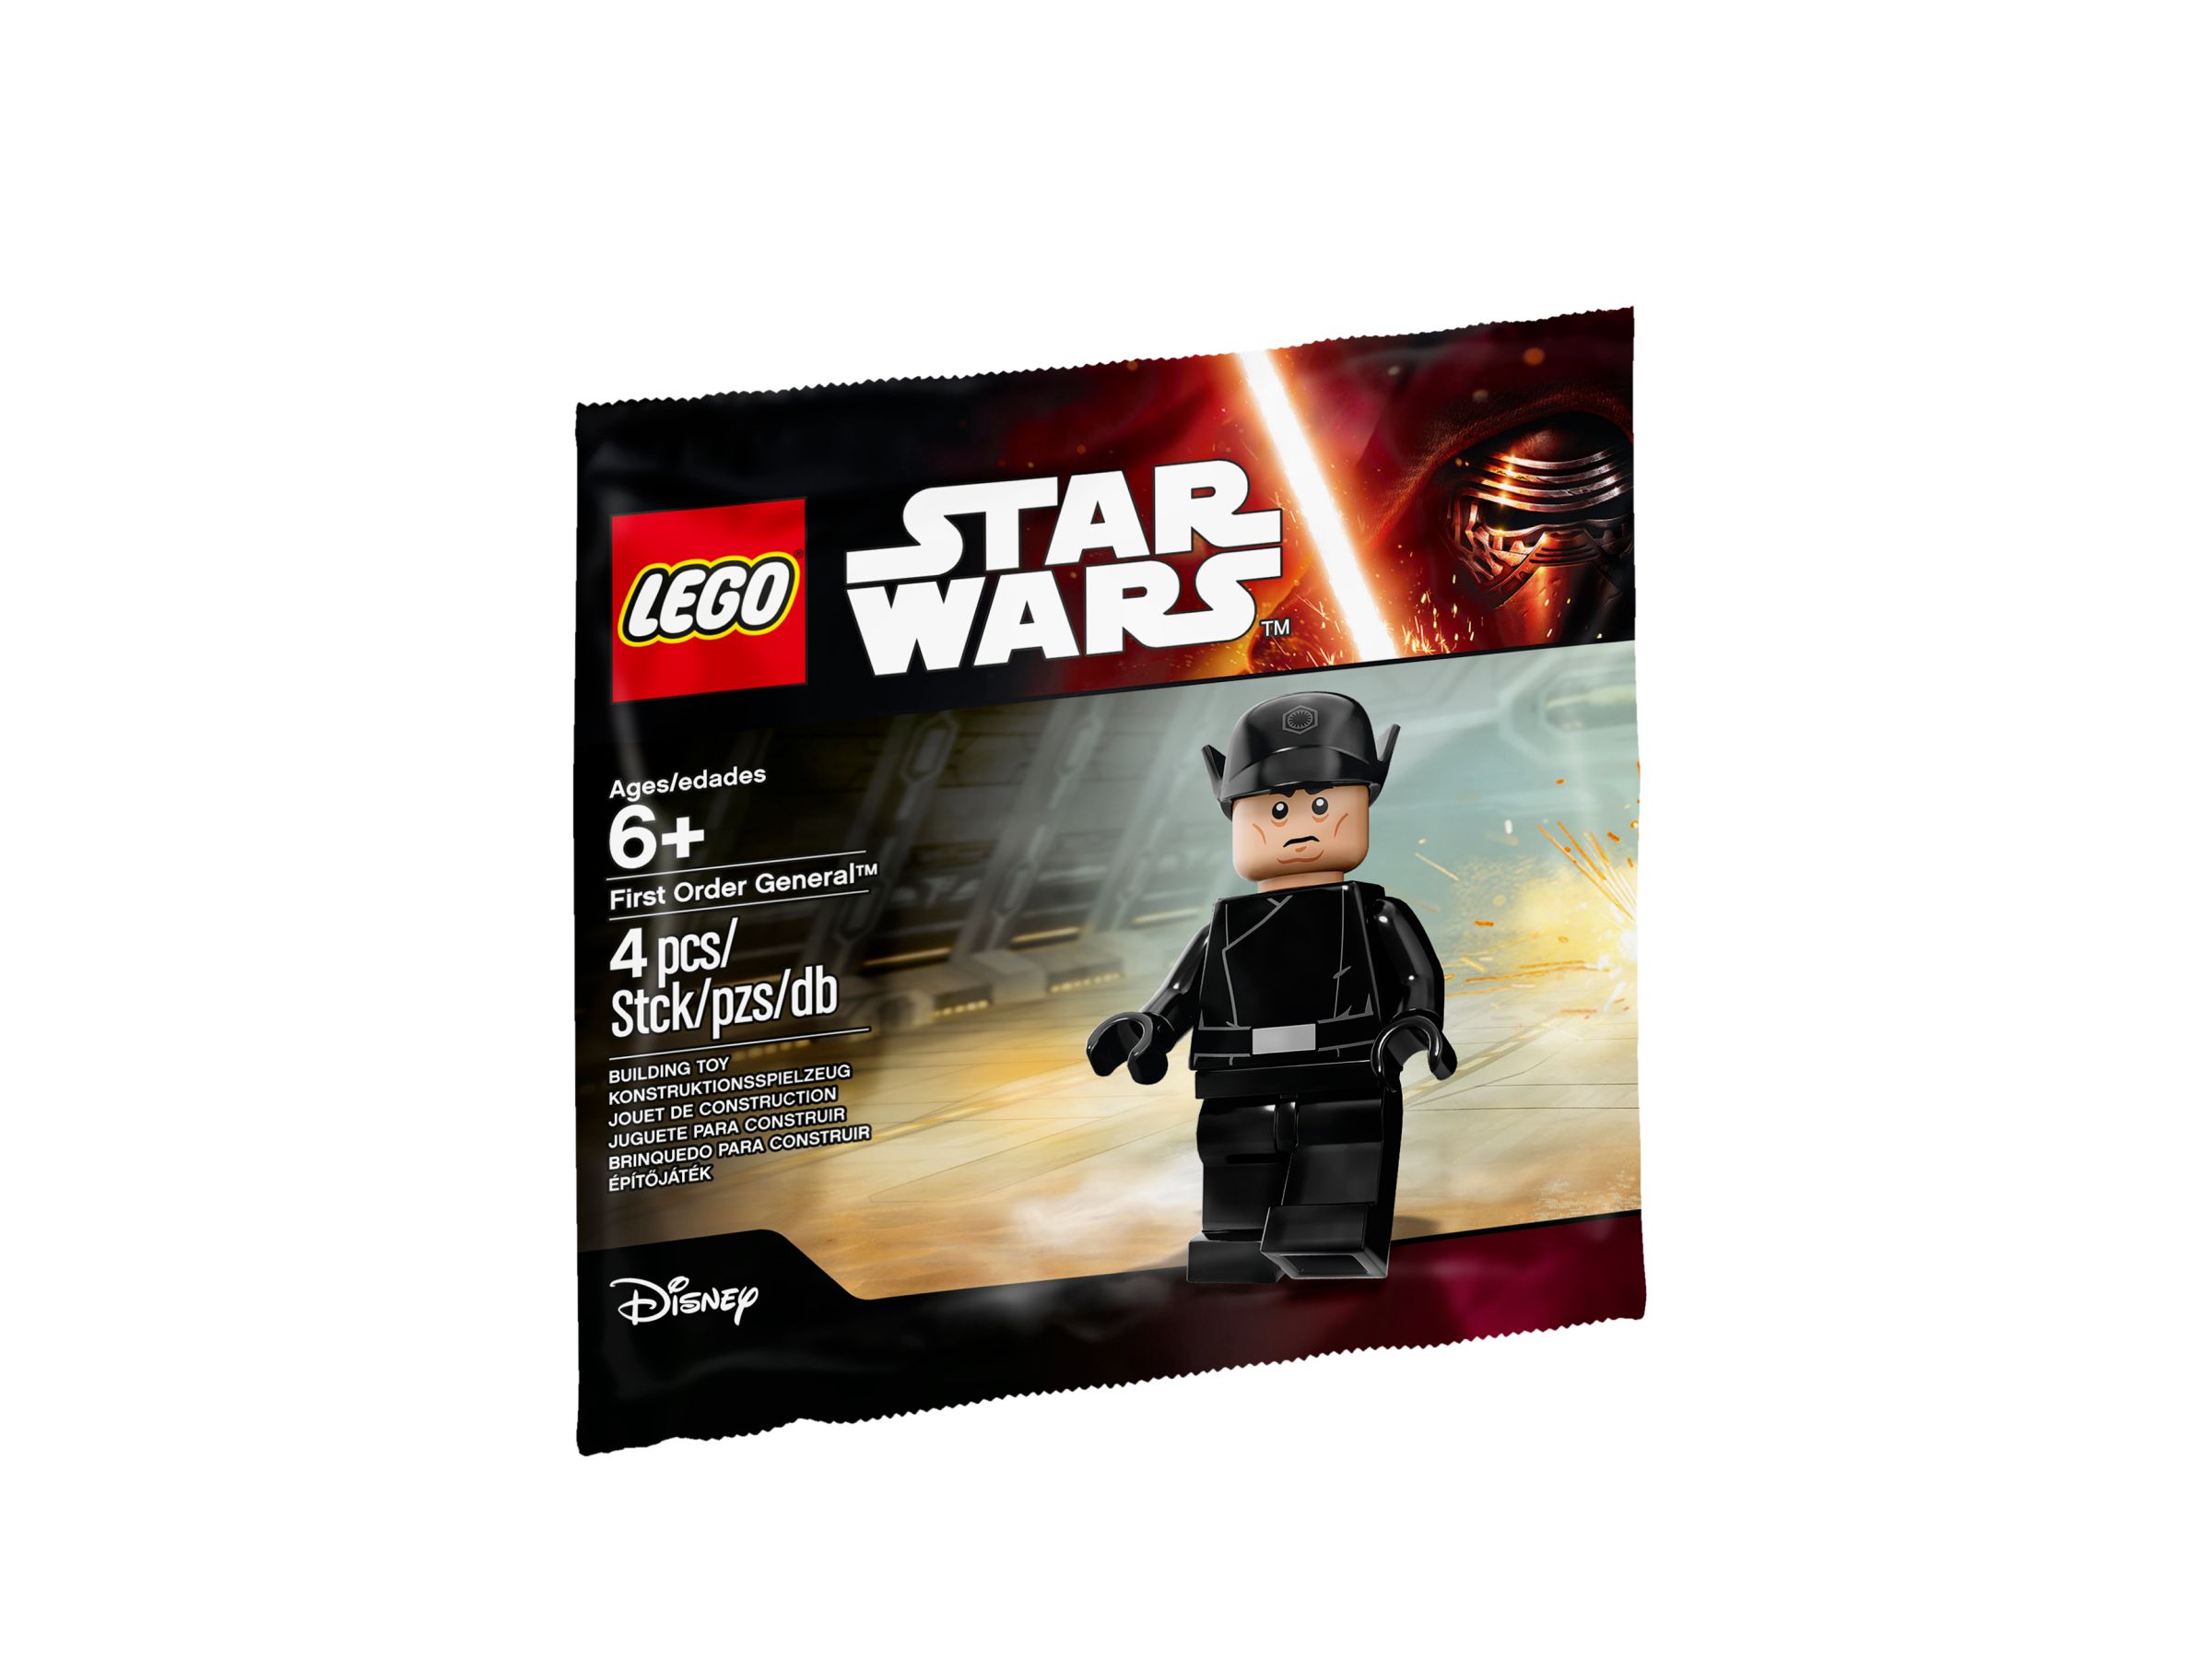 LEGO Star Wars 5004406 LEGO® Star Wars™ First Order General™ LEGO_5004406_alt1.jpg